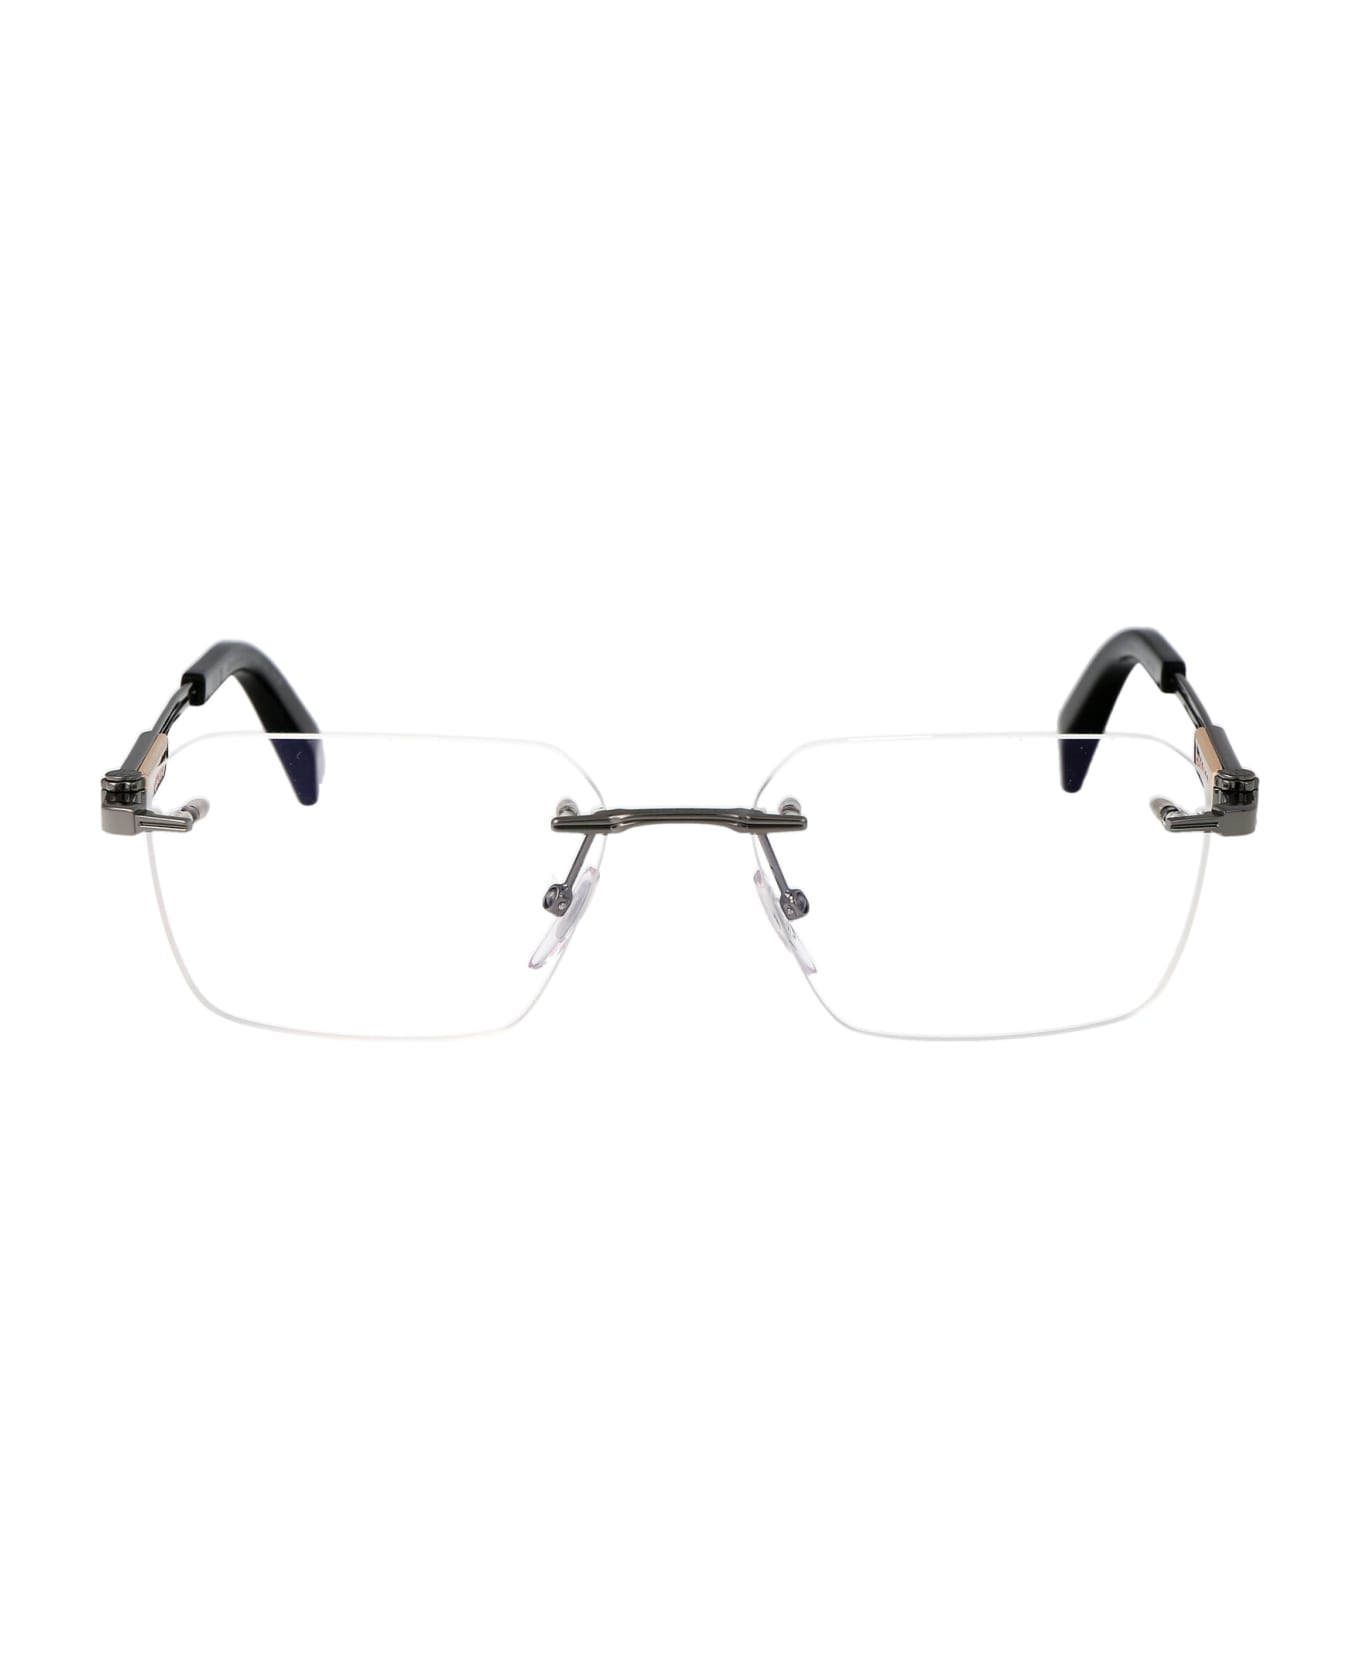 Chopard Vchg87 Glasses - 0509 RUTENIO LUCIDO TOTALE